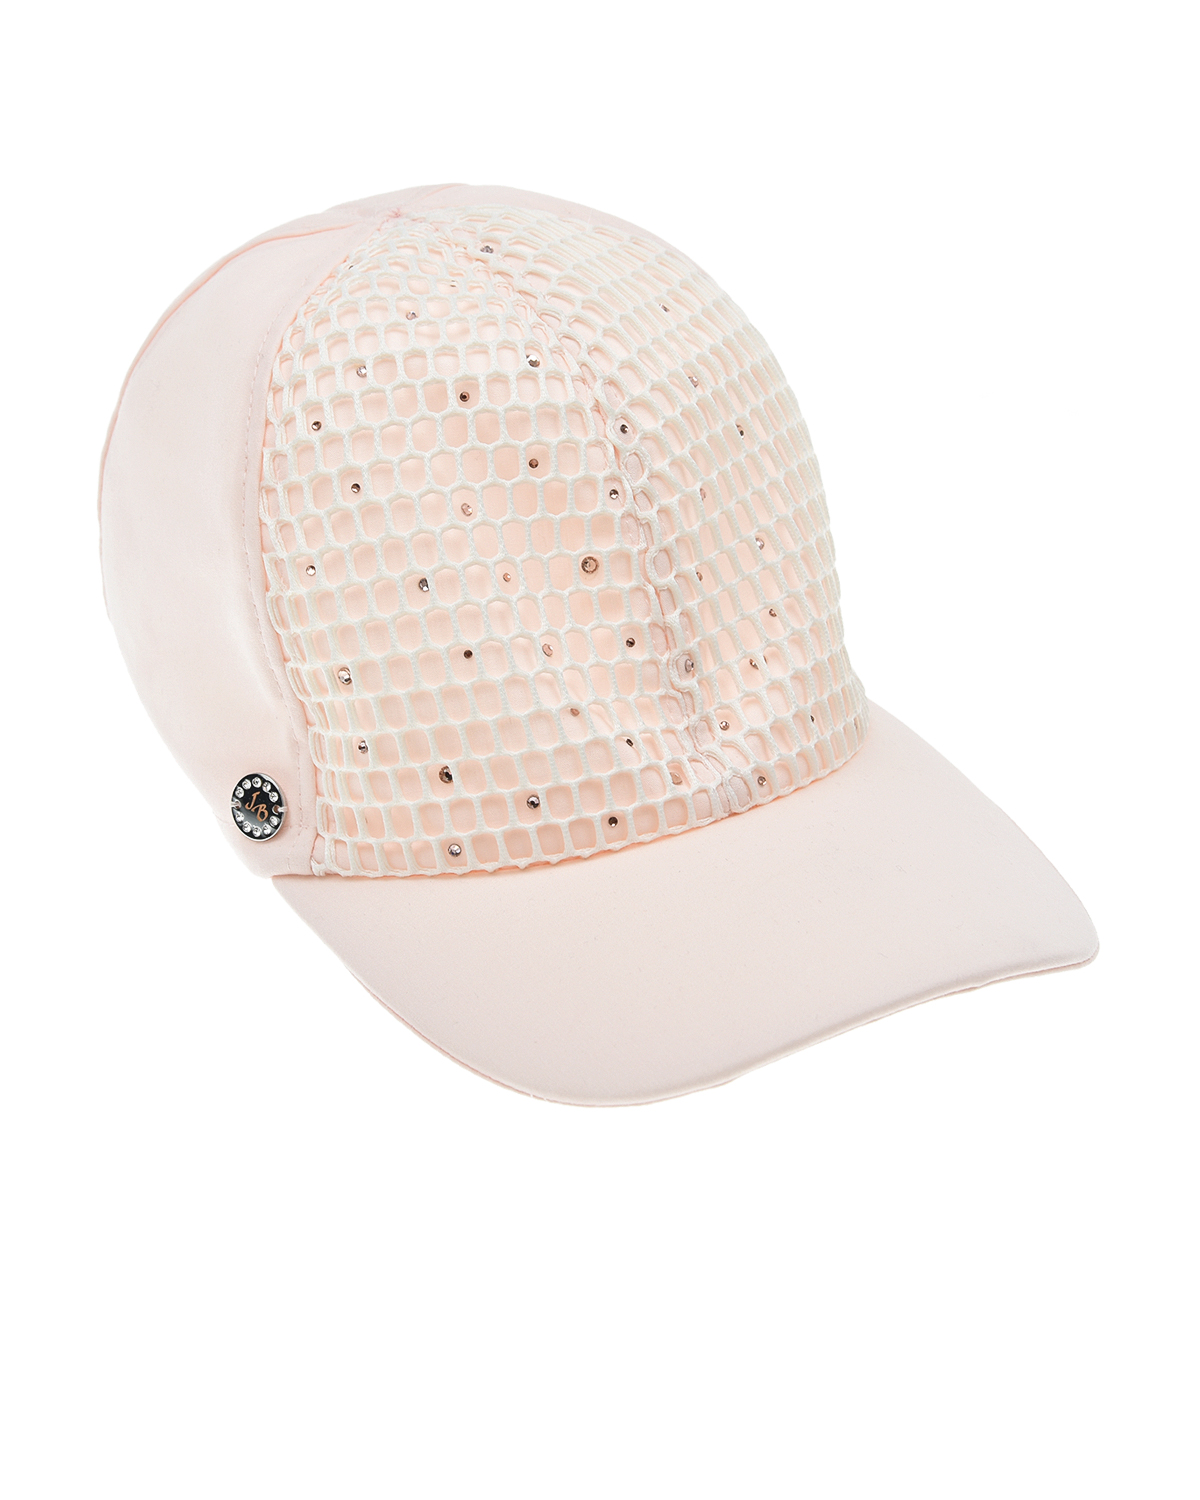 Розовая кепка с сеткой и стразами Joli Bebe детская, размер 54, цвет белый